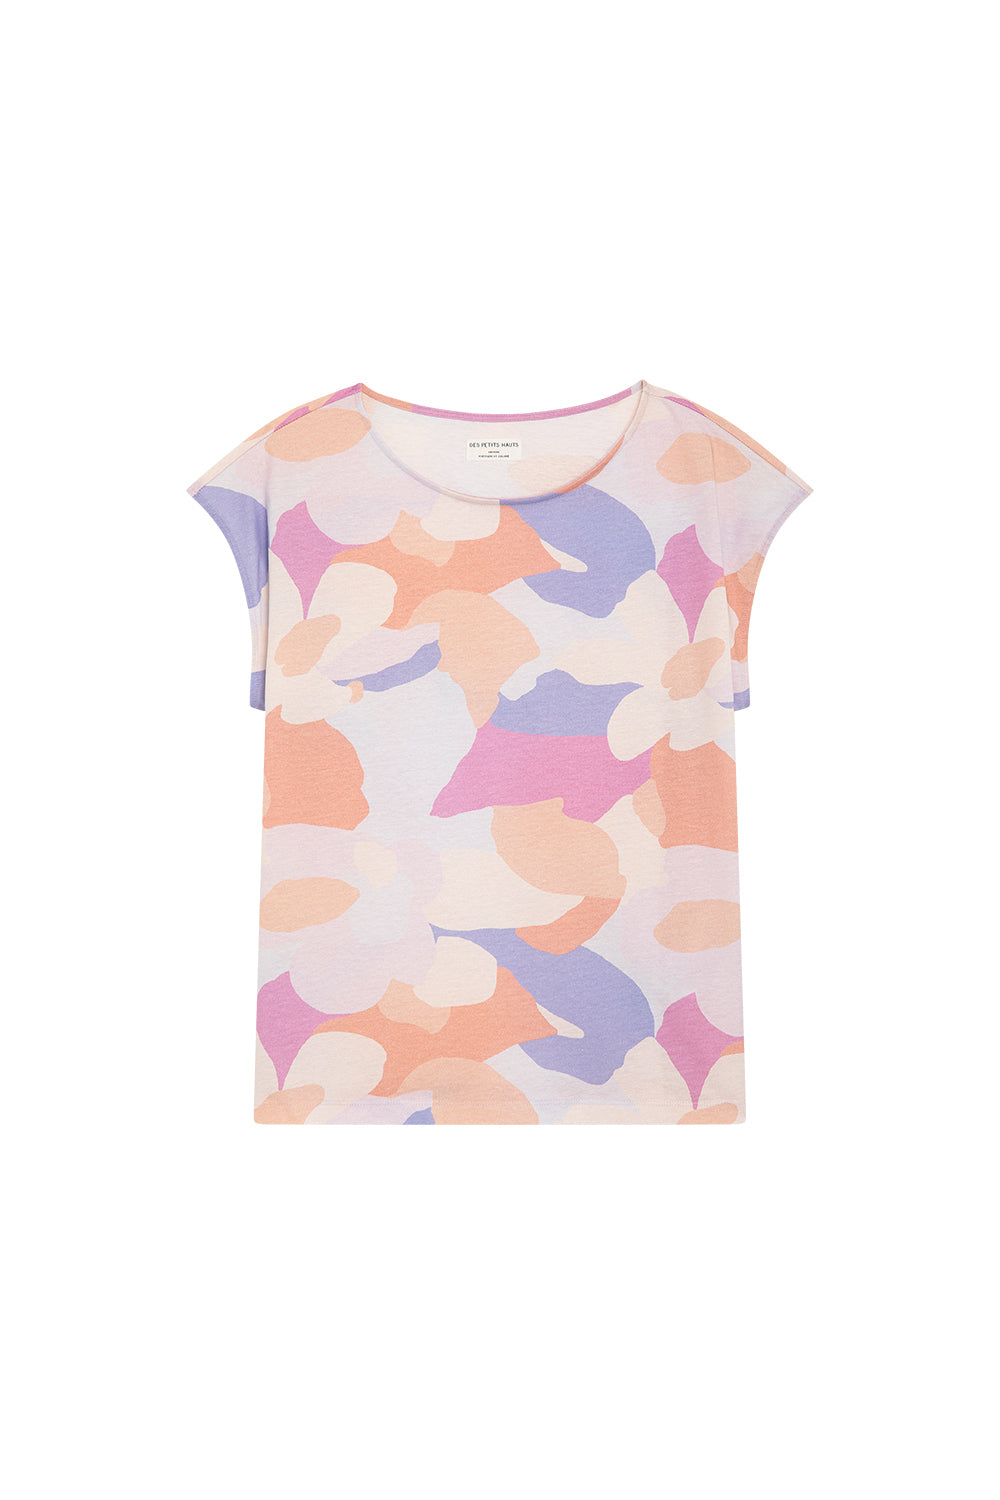 Kalabs Matisse T-shirt